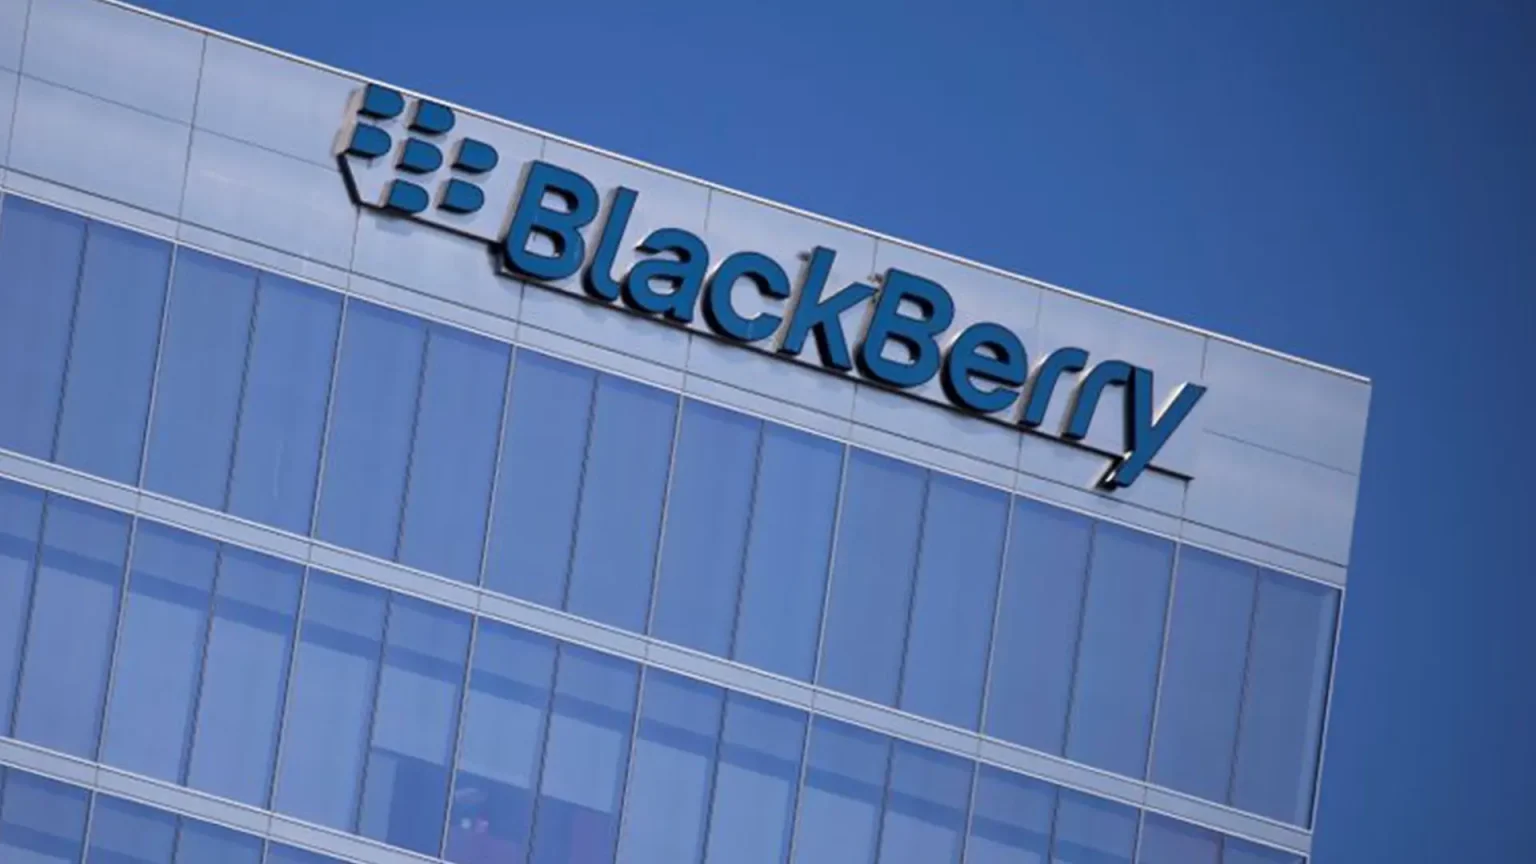 BlackBerry'nin yeni CEO'su John J. Giamatteo oldu